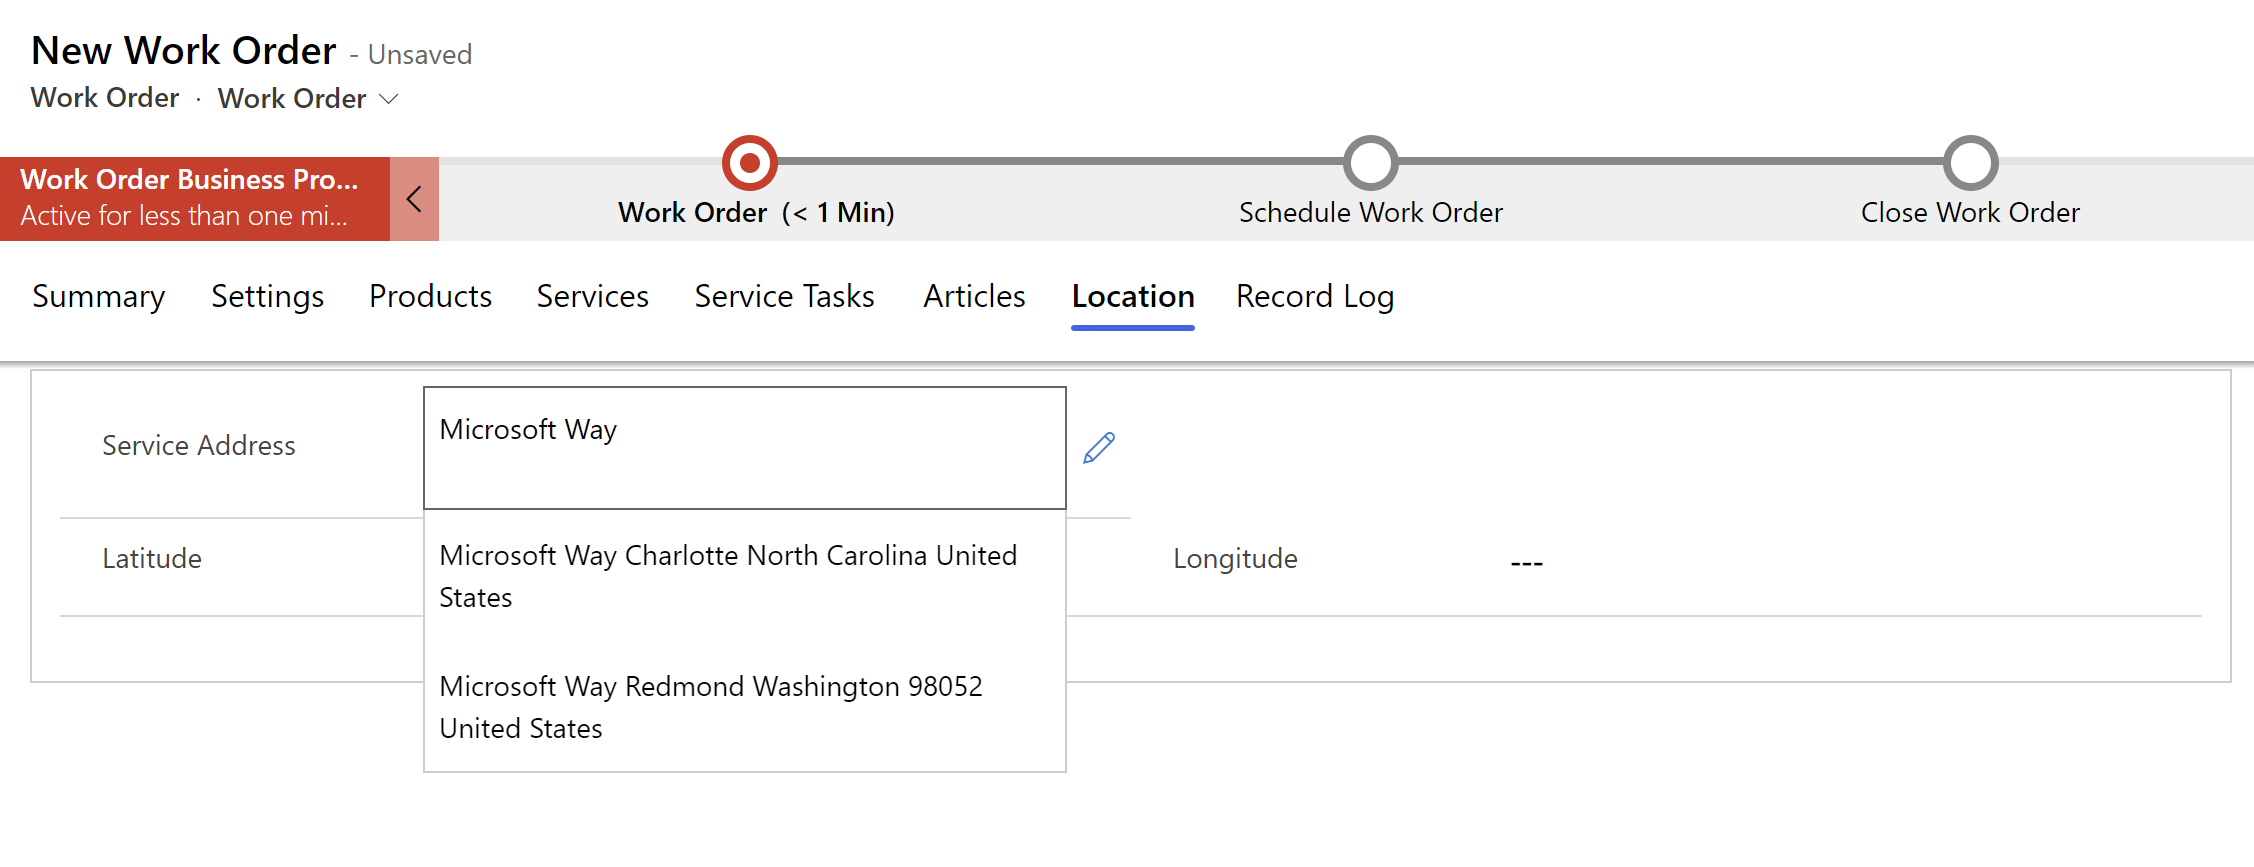 Captura de ecrã de uma nova ordem de intervenção no Field Service a mostrar sugestões de endereço num menu suspenso.